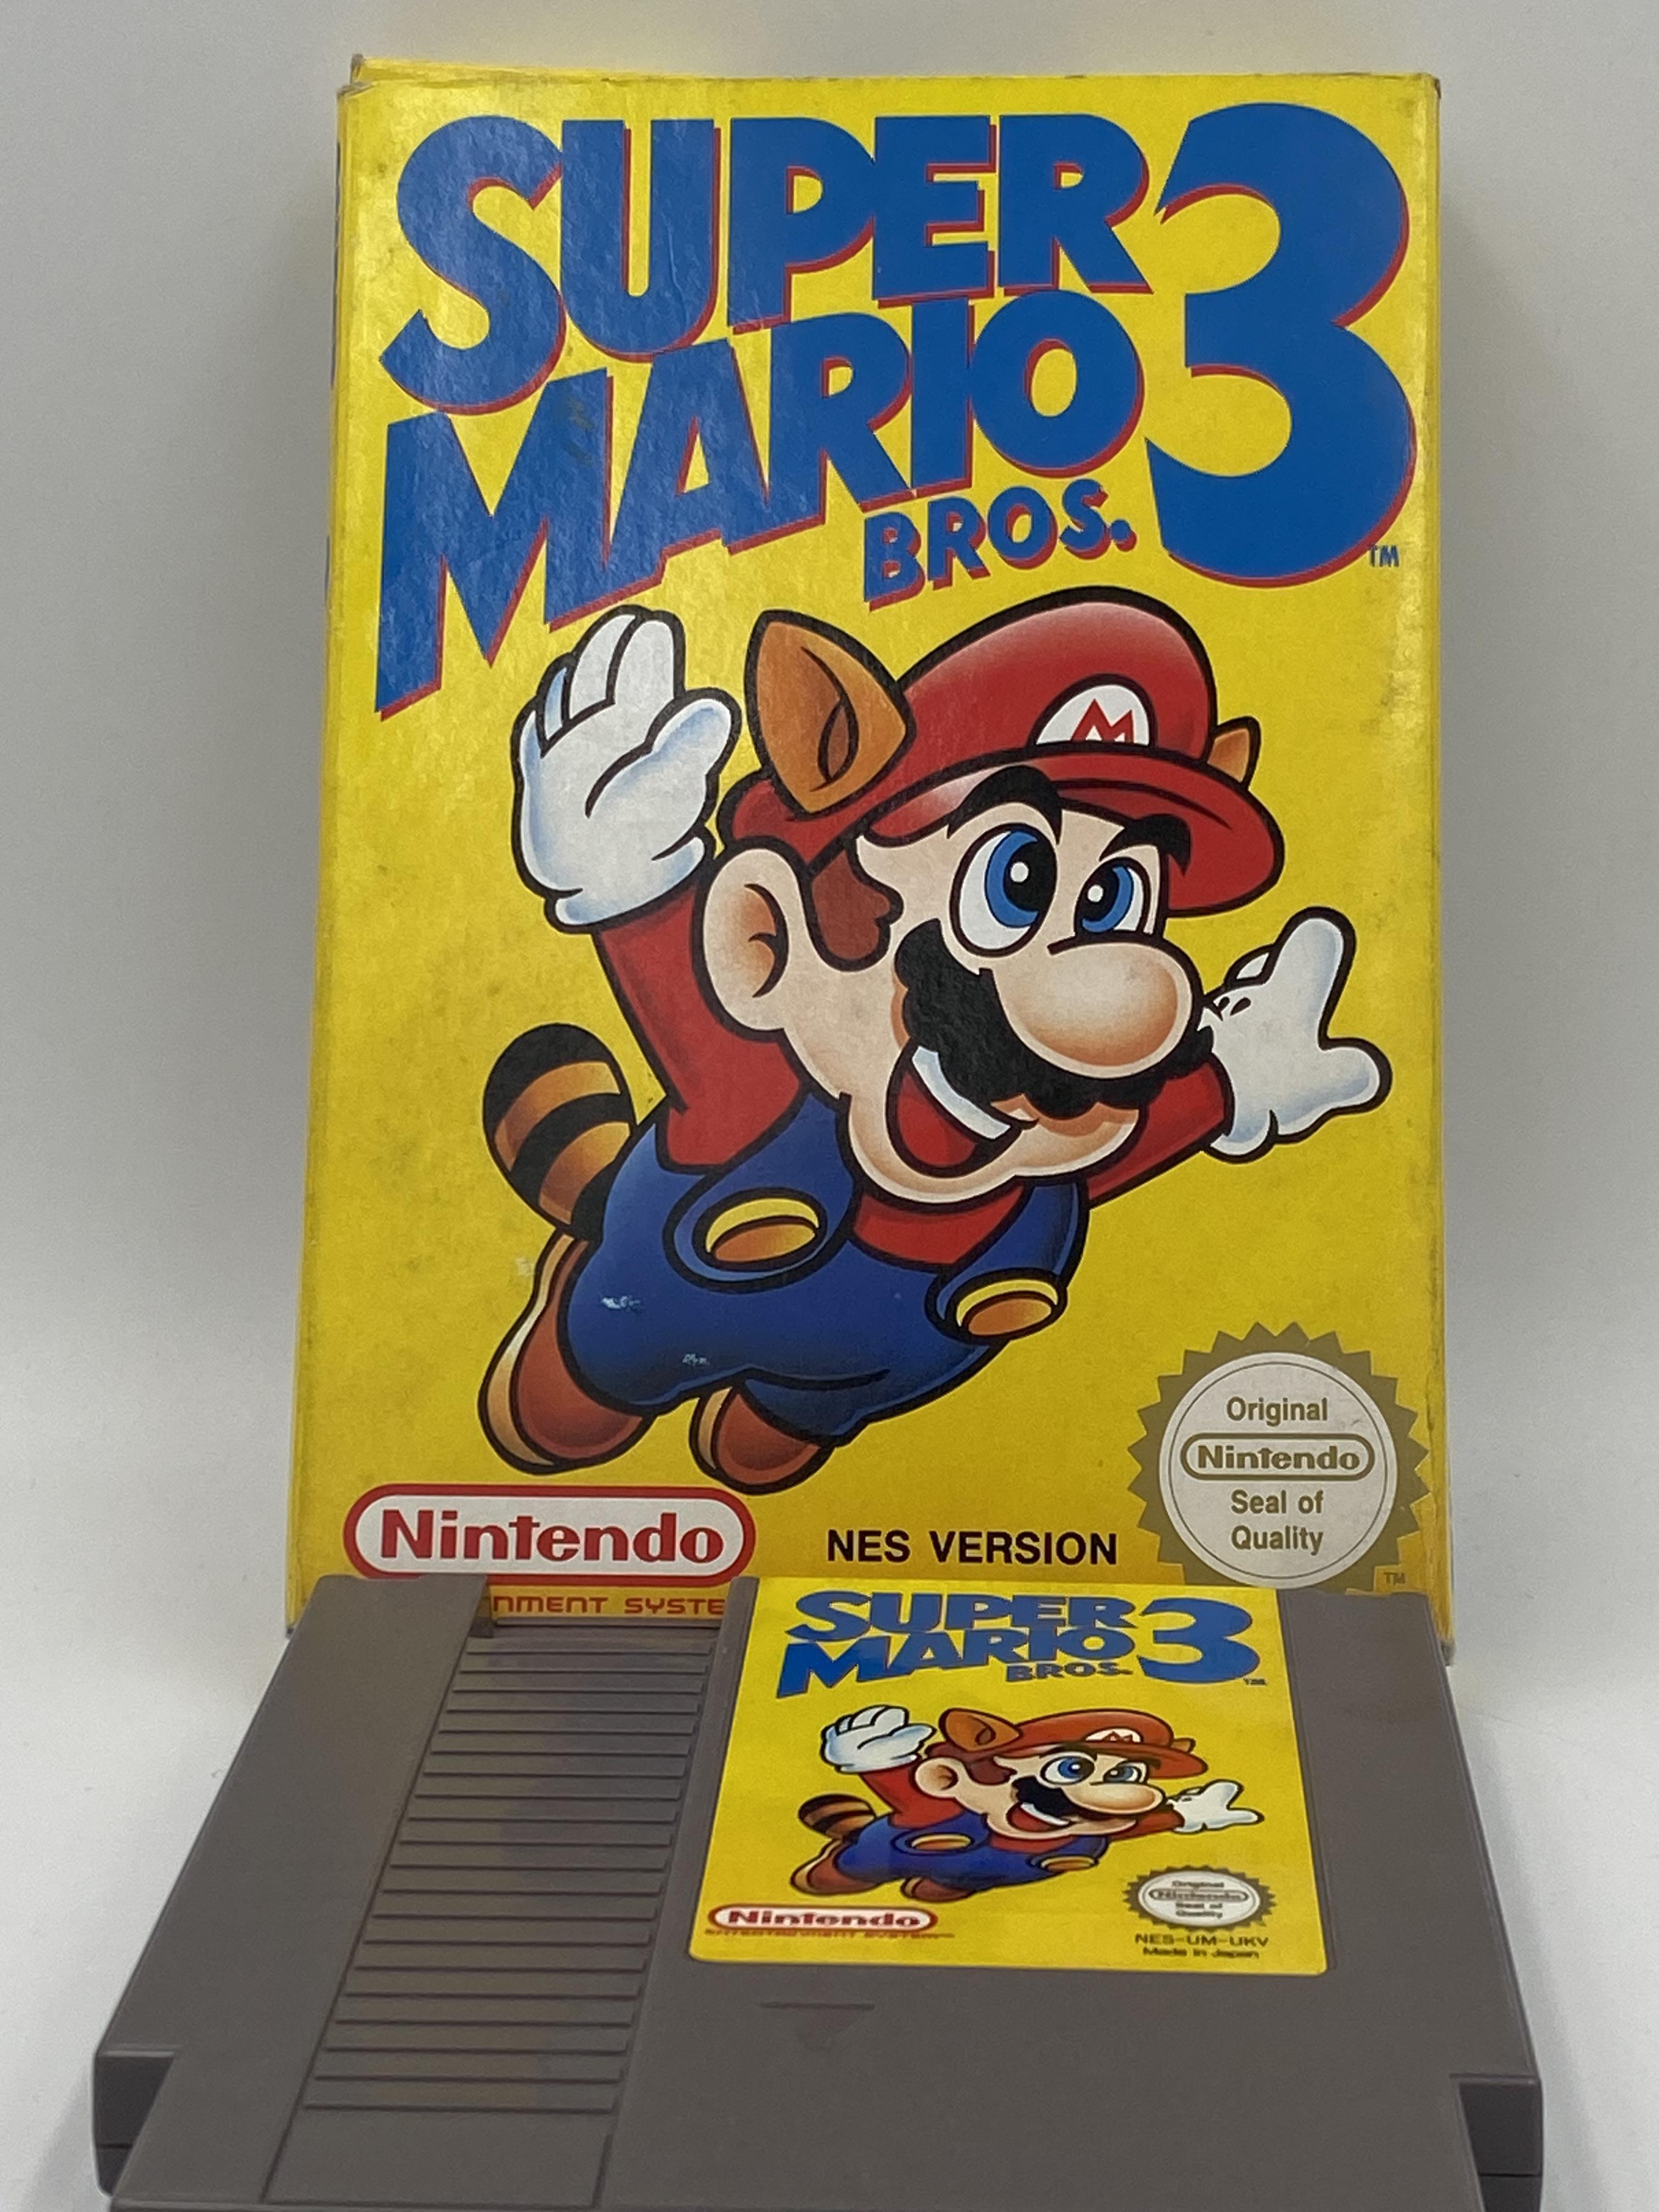 Nintendo NES Super Mario Bros 3, NES Version, boxed - Image 3 of 3